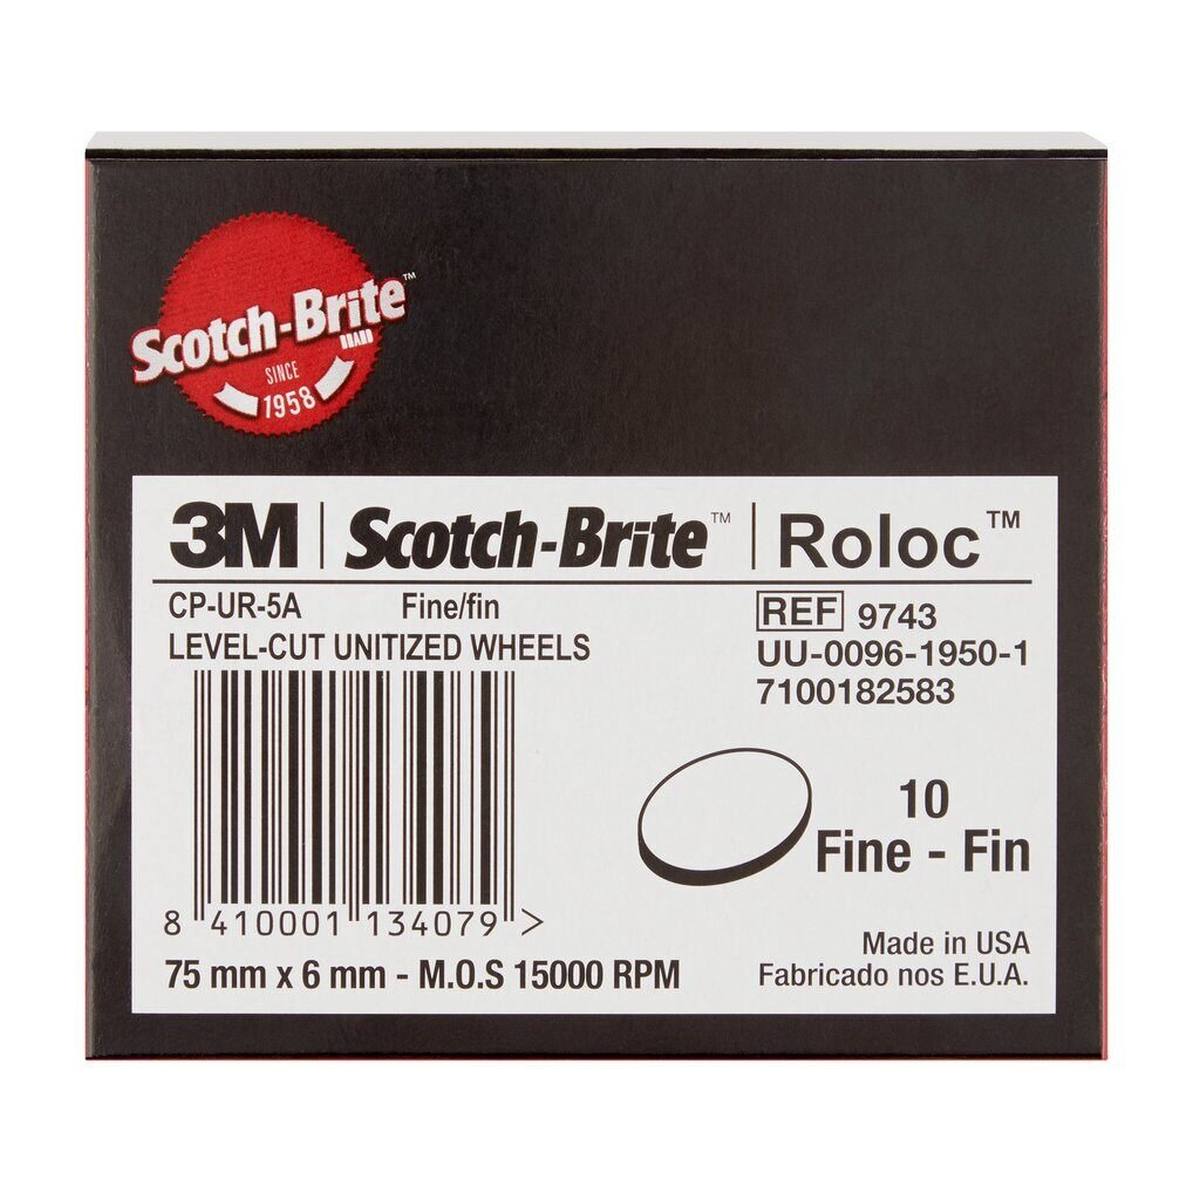 3M Scotch-Brite Roloc compact disc CP-UR, 75 mm, 6 mm, 10 mm, 5, A, fine